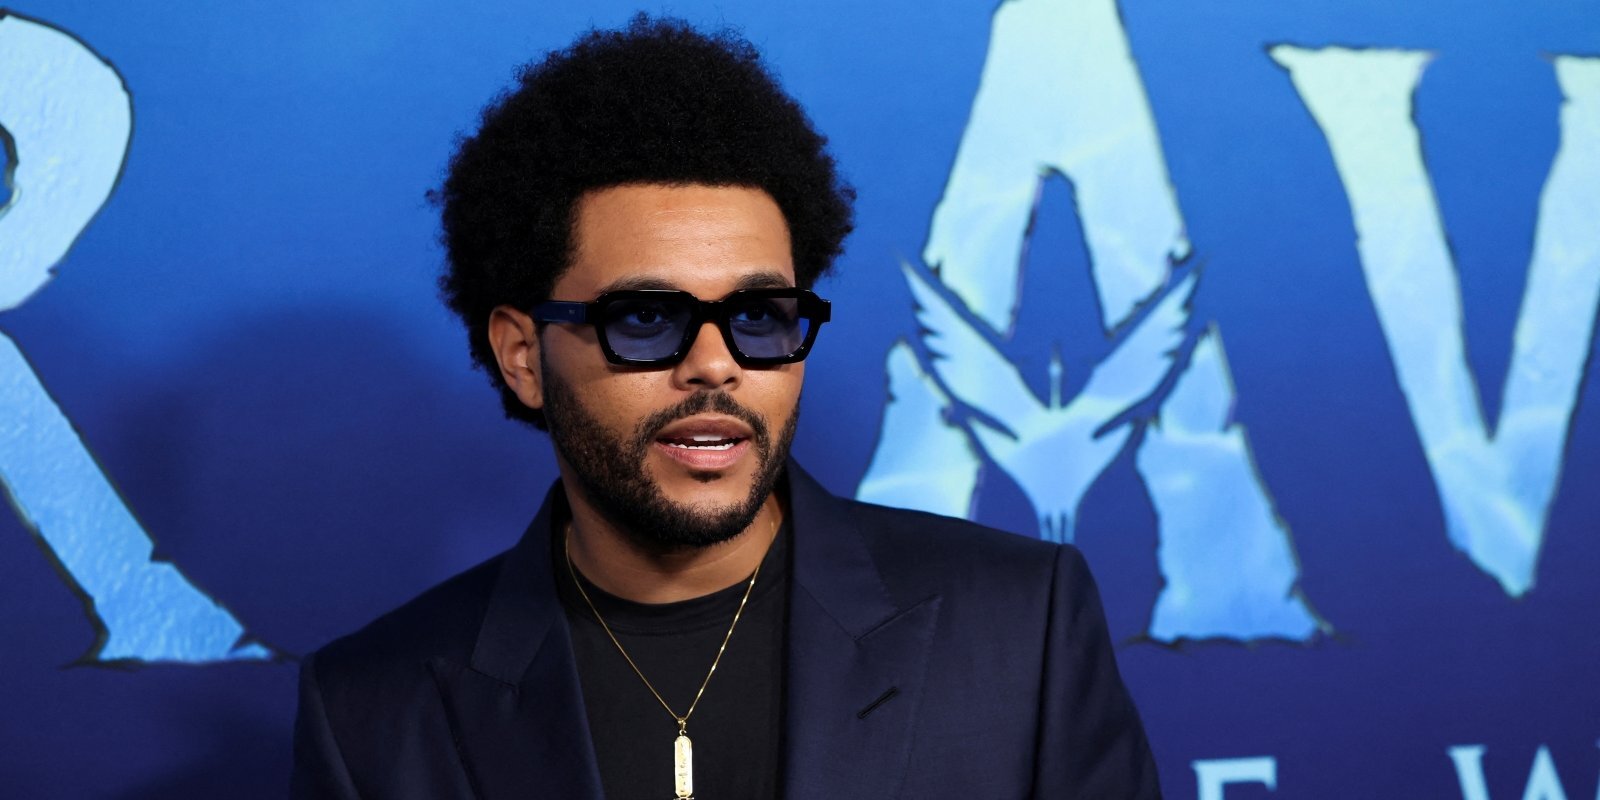 Mūziķis The Weeknd debitēs kino ar galveno lomu filmā, kurai pats veidojis scenāriju